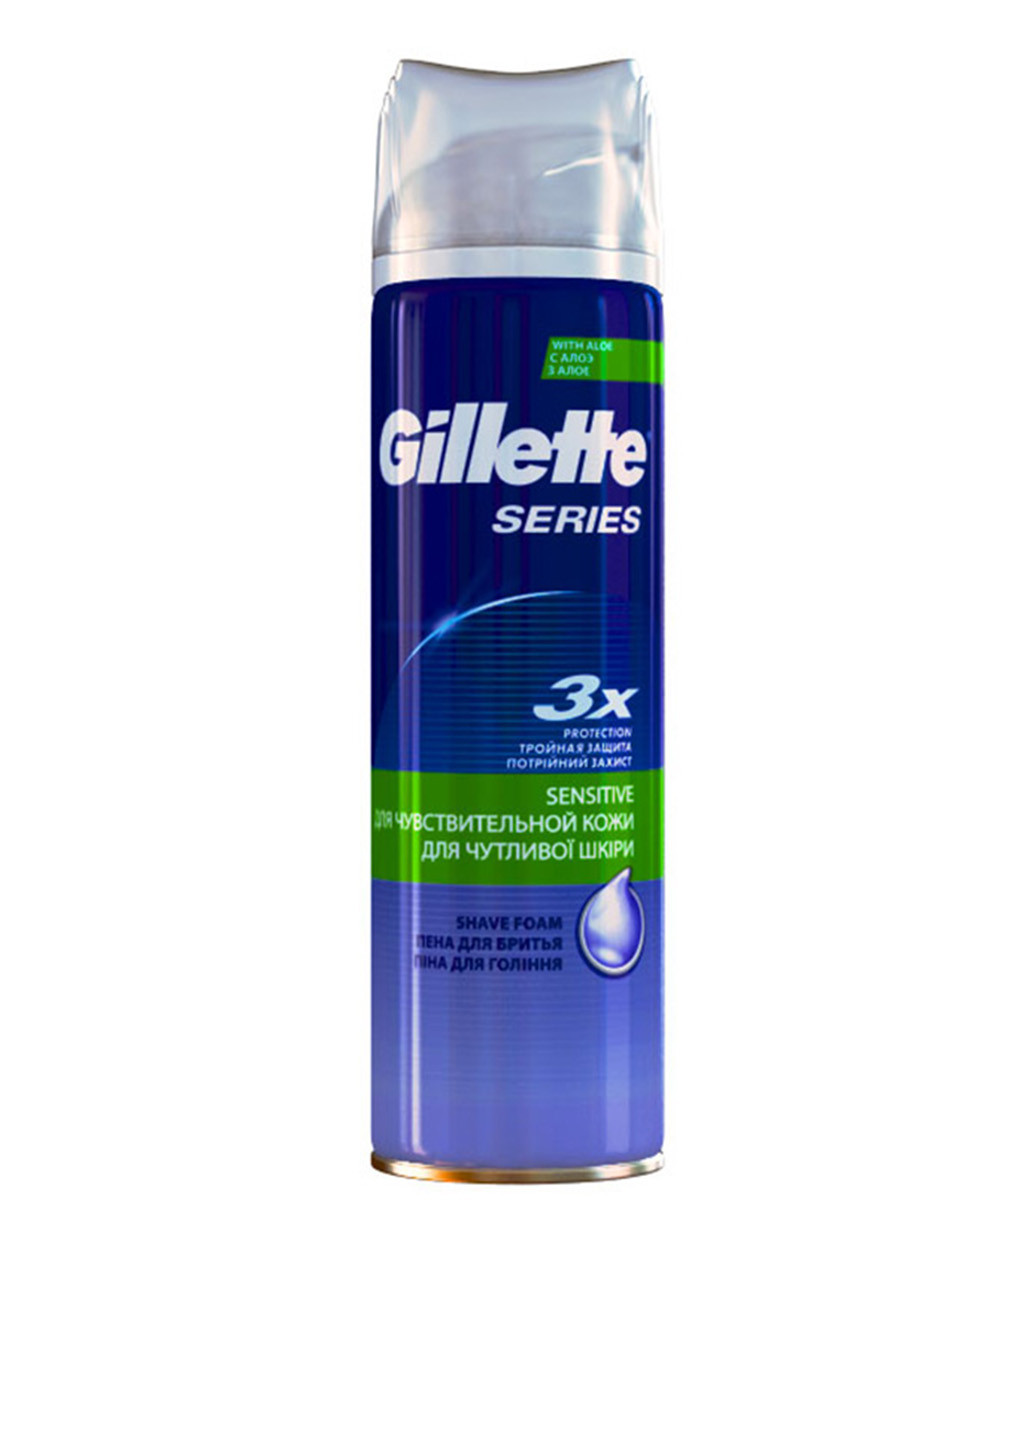 Пенка для бритья "Для чувствительной кожи" Series Sensitive Shave Foam, 250 мл Gillette (69674888)